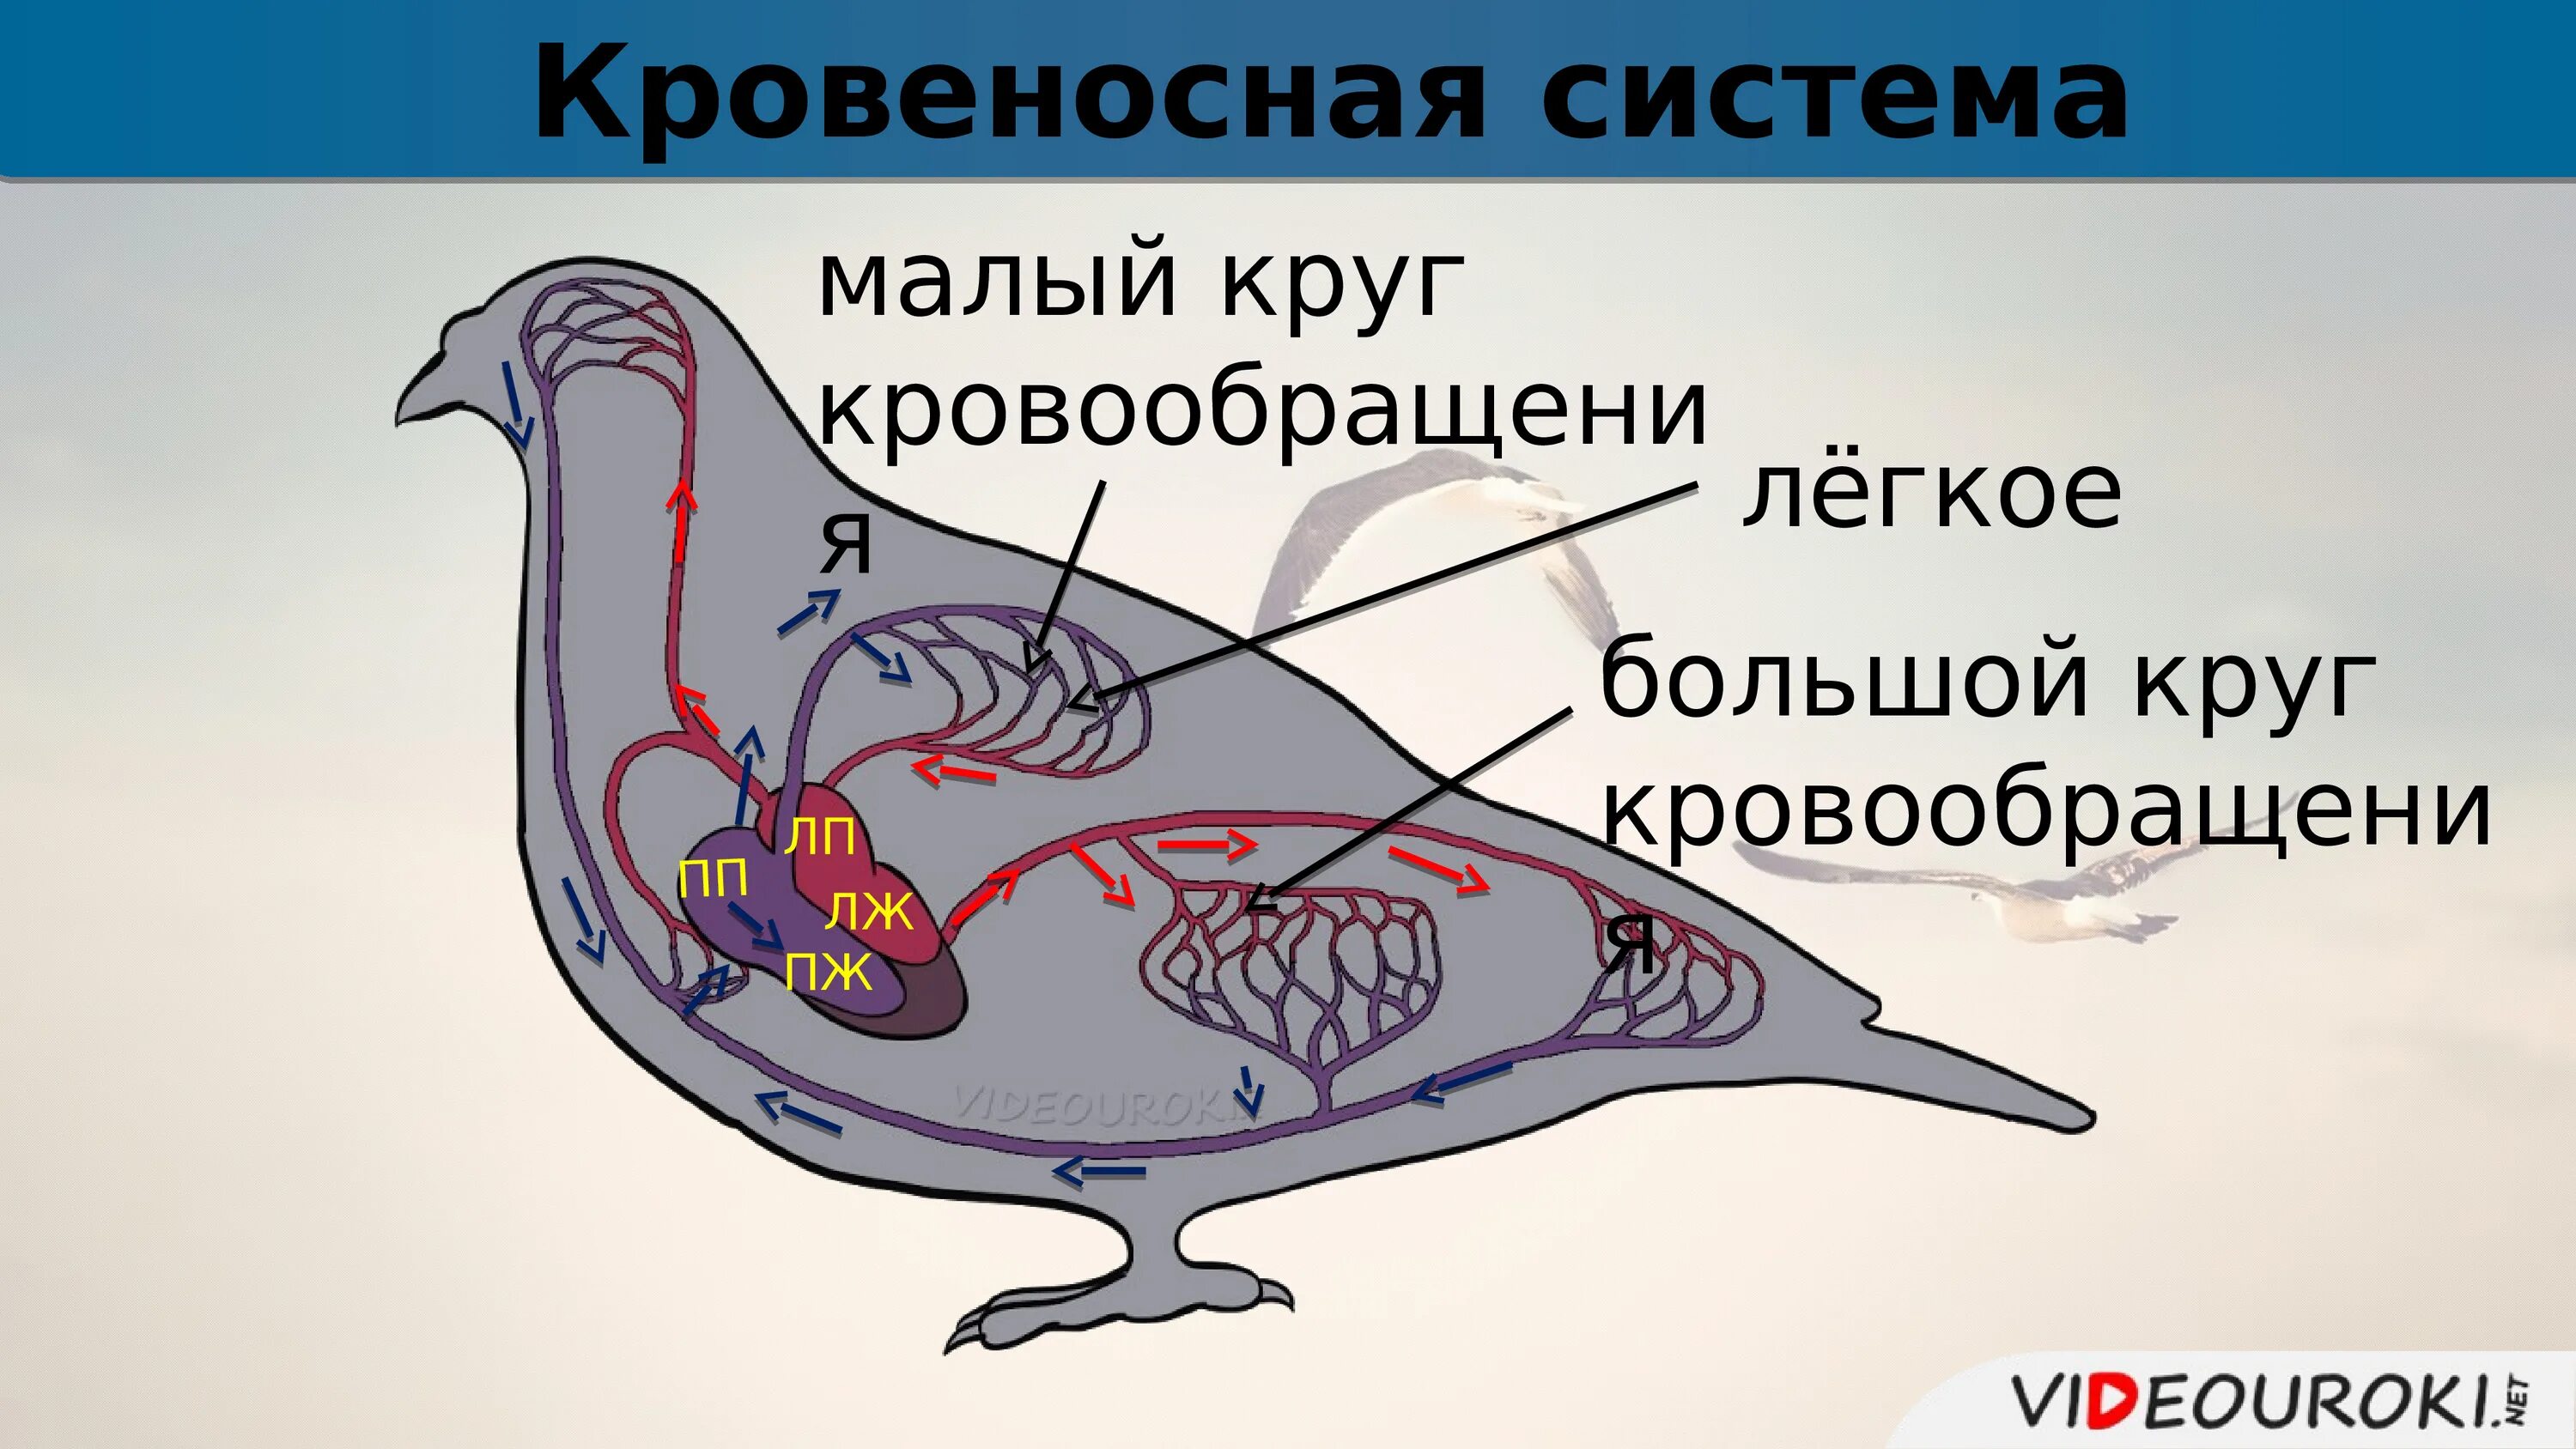 Кровеносная система птиц круги кровообращения. Кровеносная система птиц схема кругов кровообращения. Схема строения кровеносной системы птиц. Кровеносная система птиц большой и малый круг.